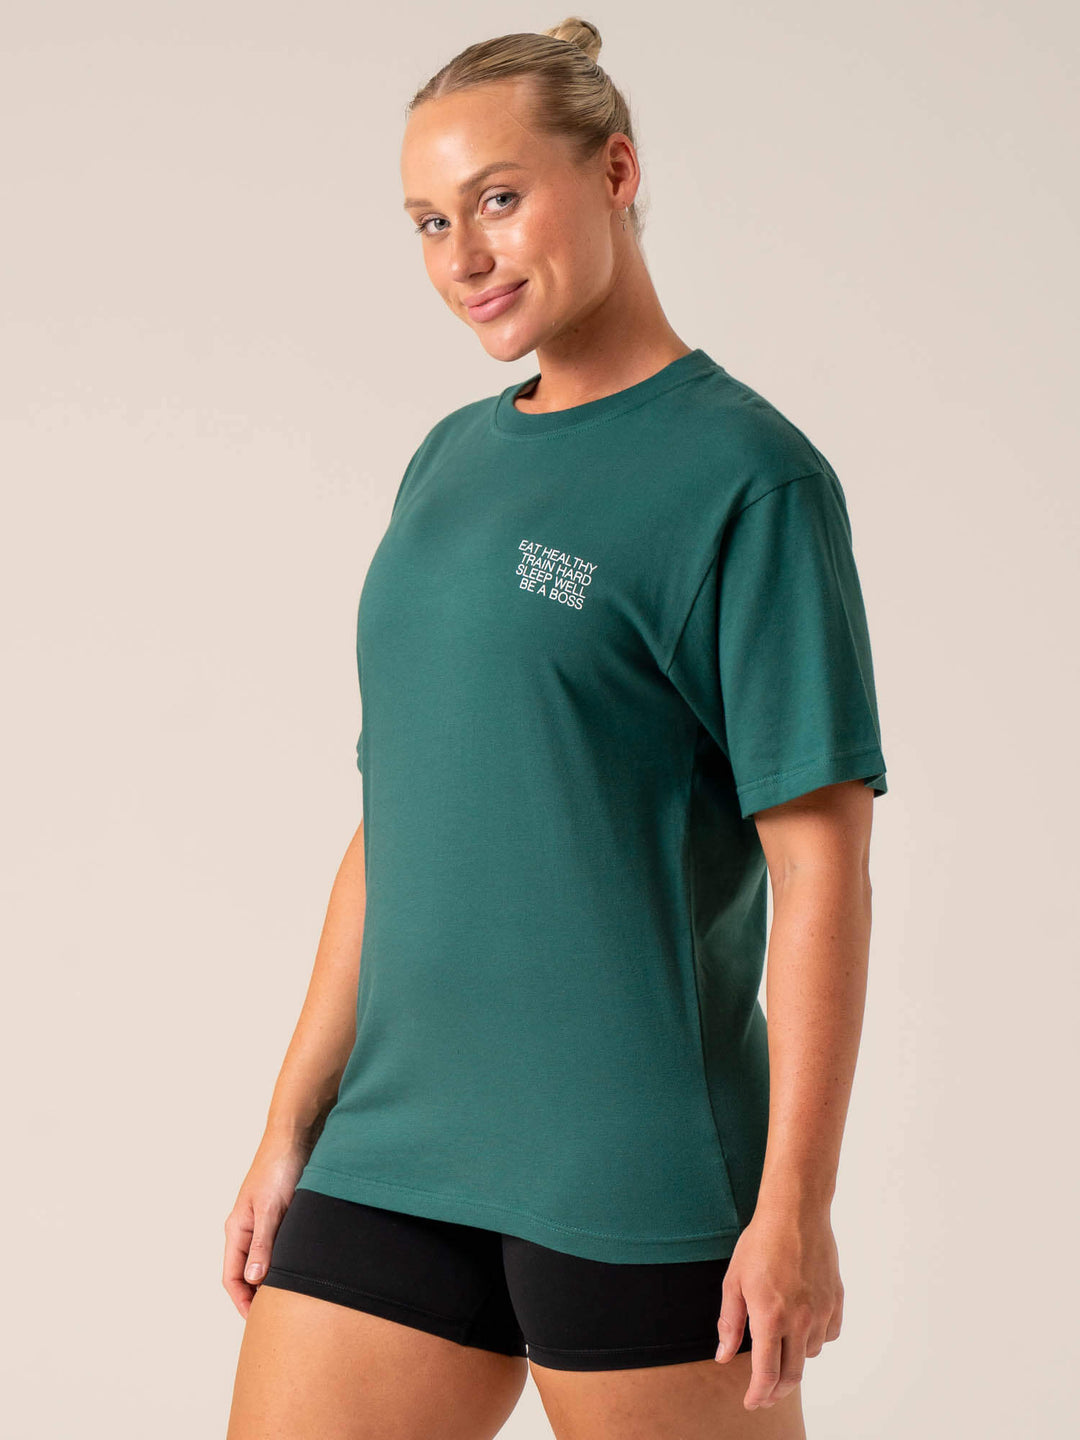 Wellness T-Shirt - Forest Green Clothing Ryderwear 